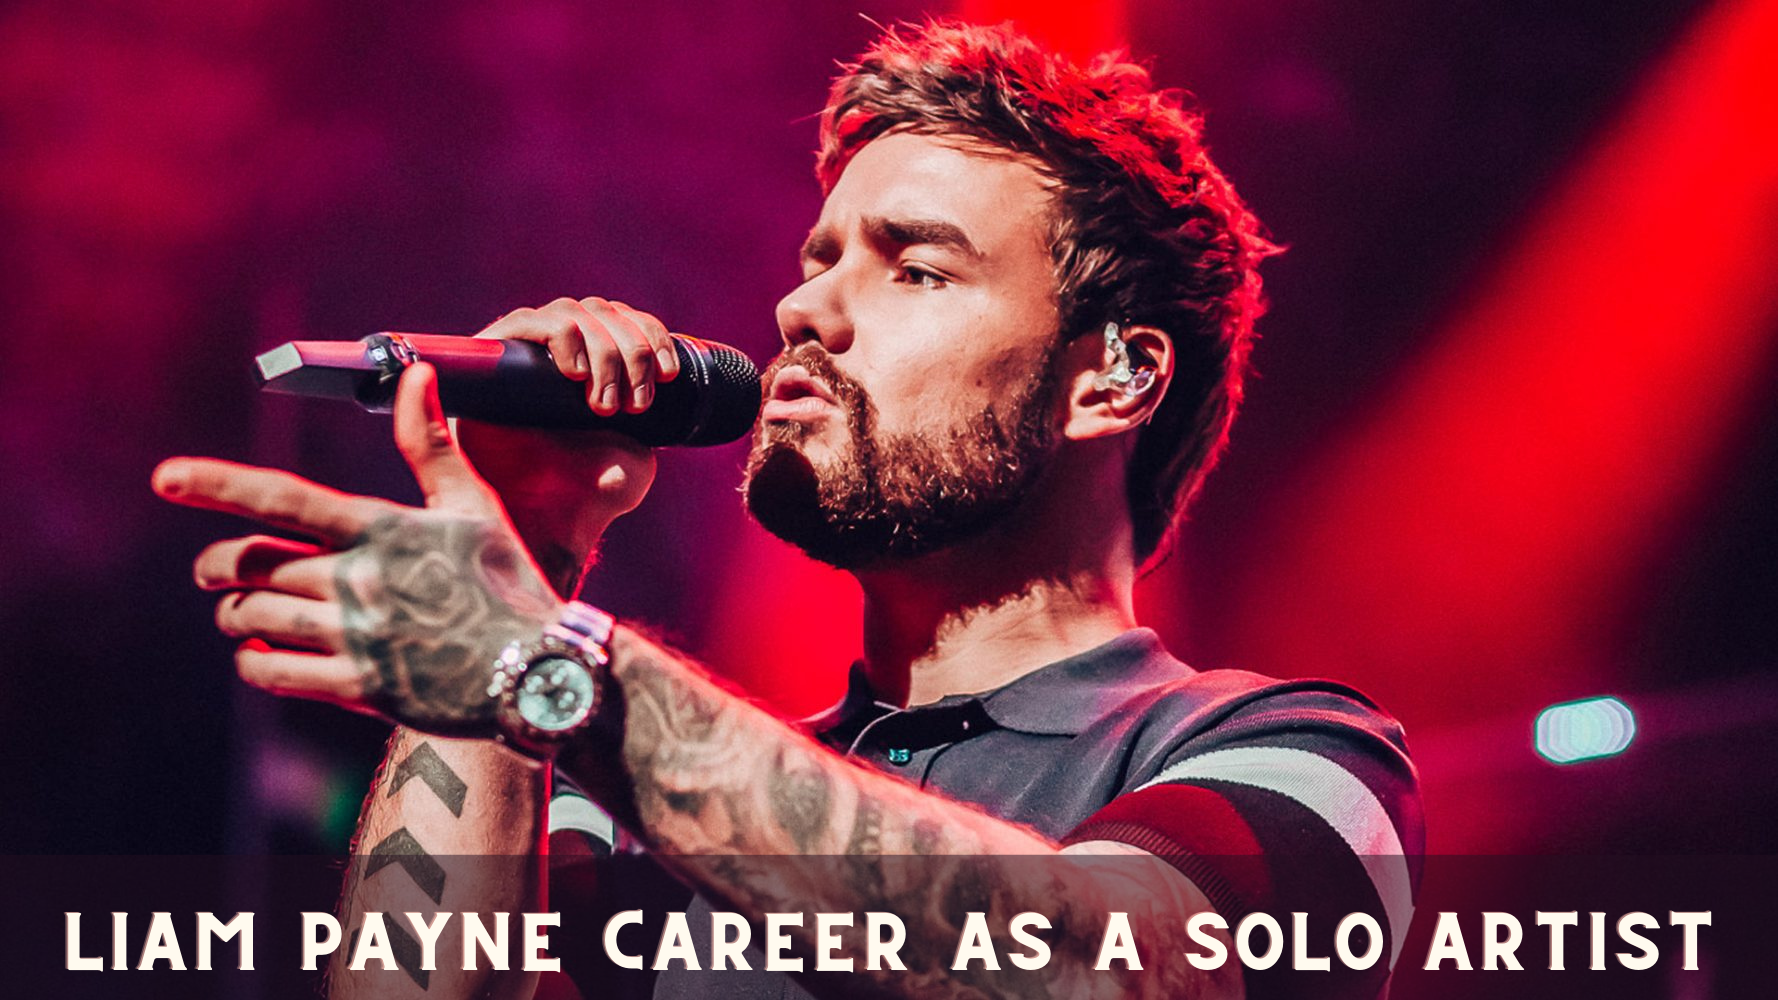 Liam Payne Career as a Solo Artist